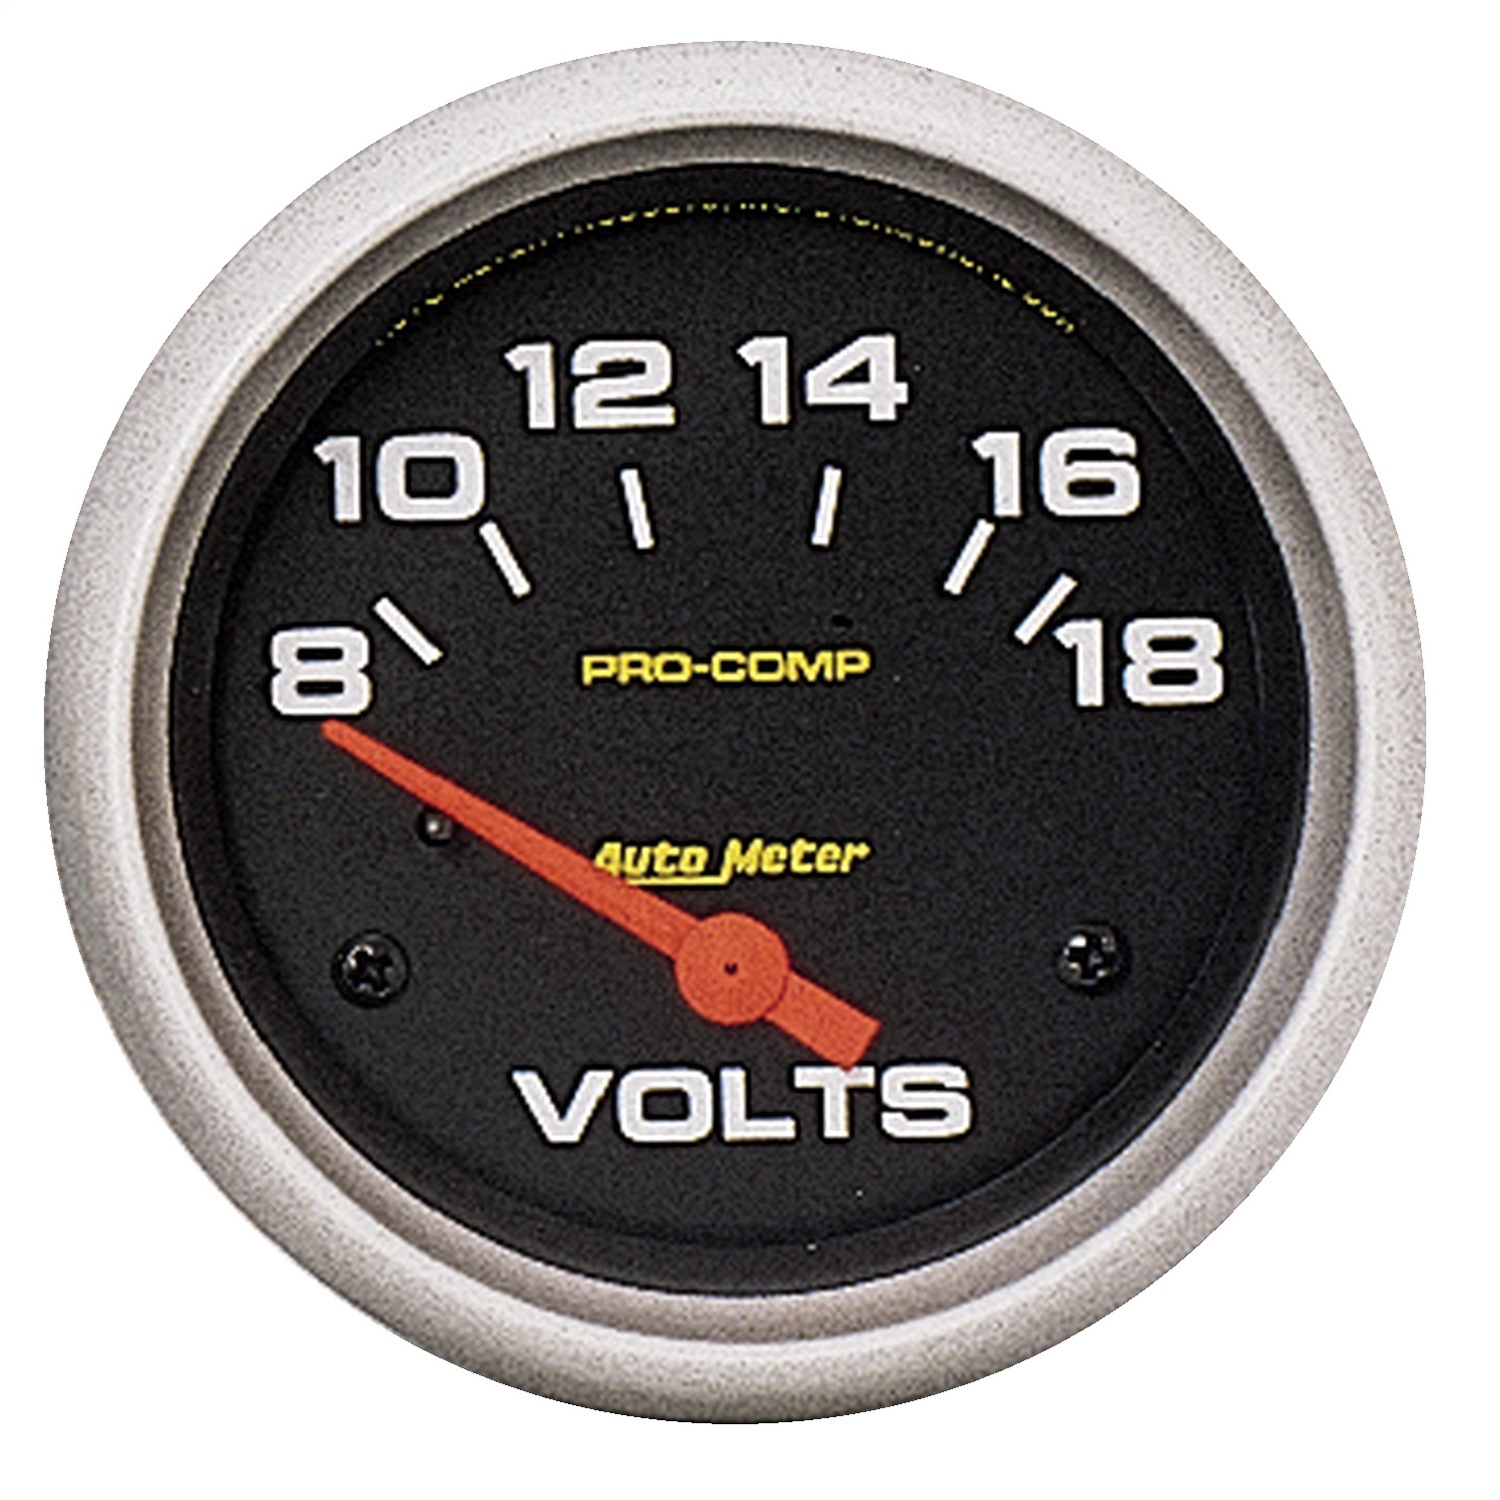 Auto Meter Auto Meter 5492 Pro-Comp; Electric Voltmeter Gauge